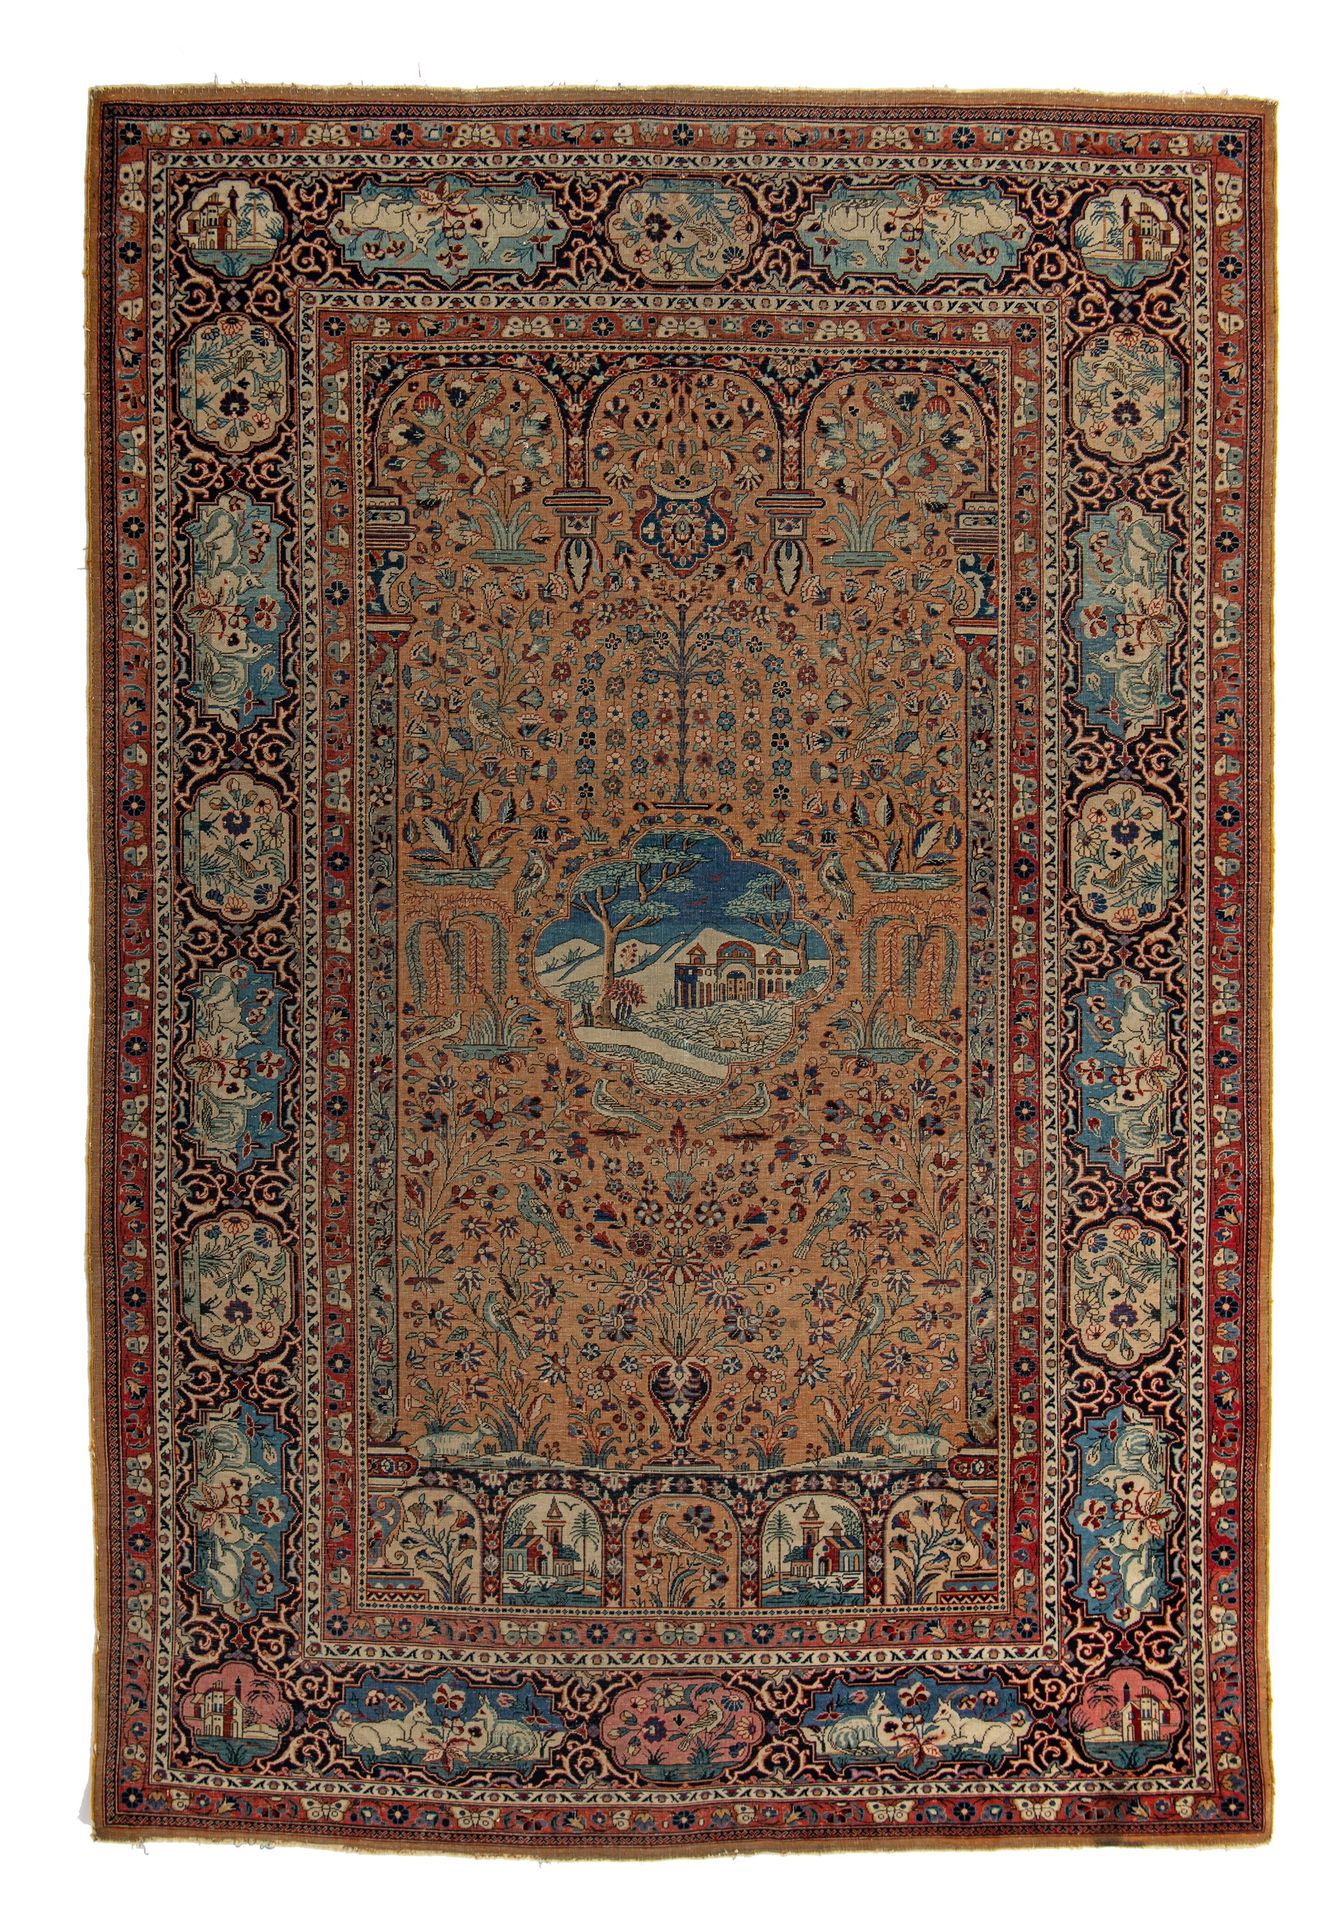 A fine antique Persian Kashan rug, 196 x 130 cm (+) Ein feiner antiker persische&hellip;